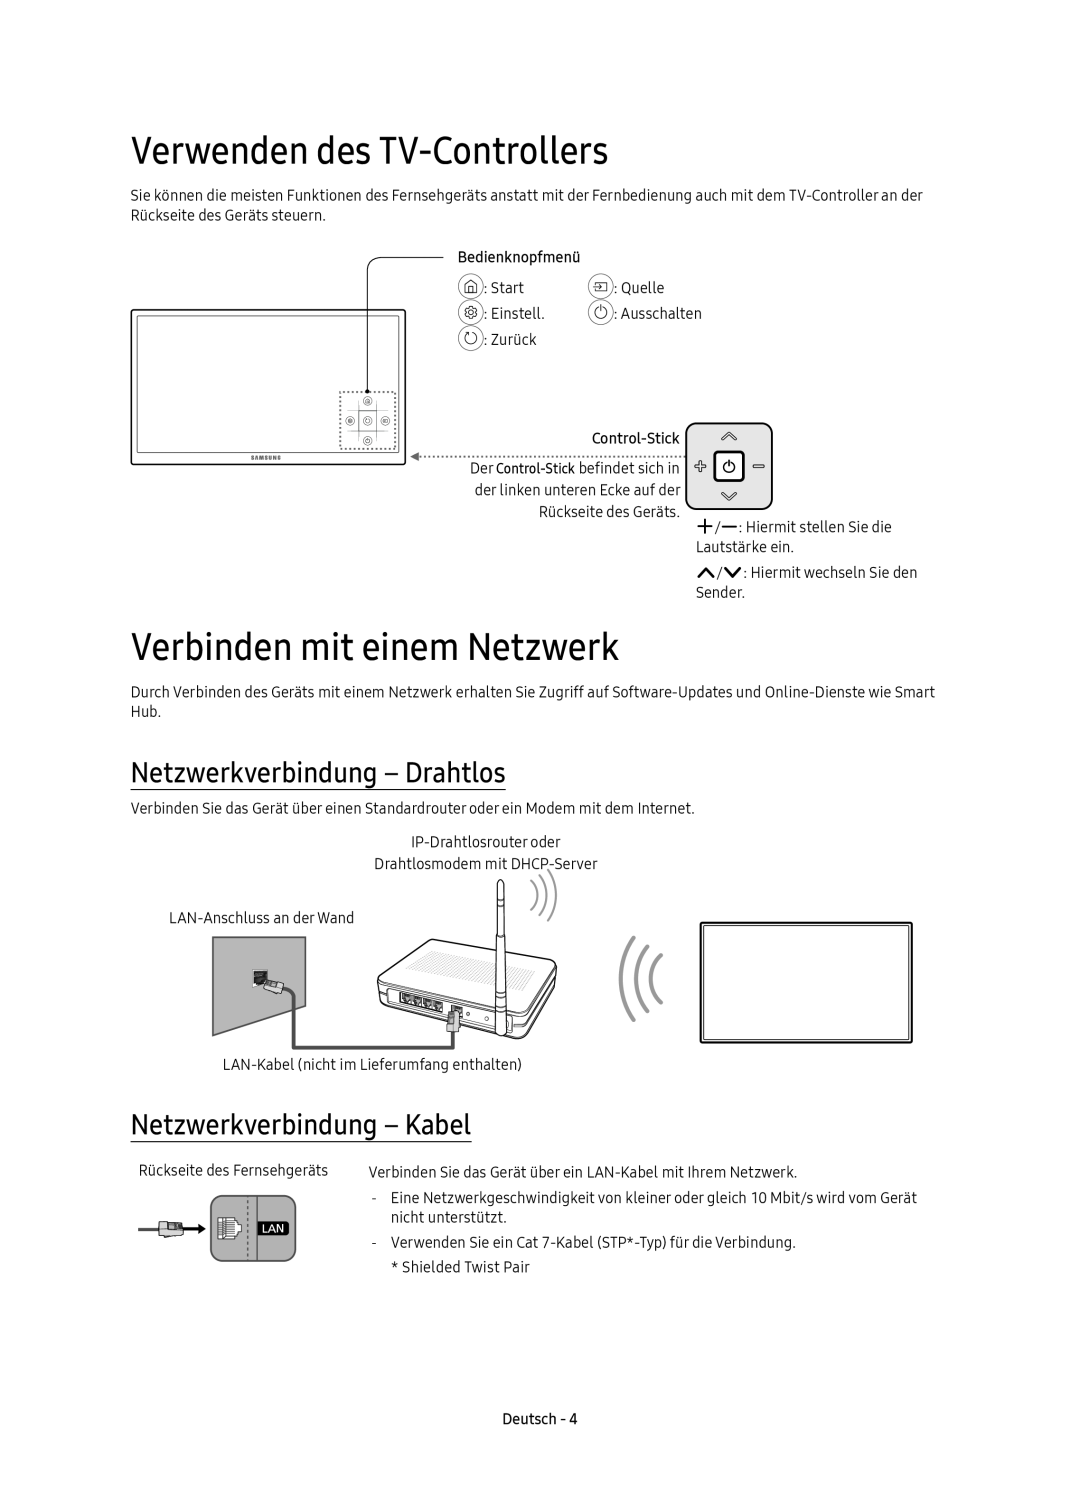 Samsung UE65KU6070UXZG Verwenden des TV-Controllers, Verbinden mit einem Netzwerk, Netzwerkverbindung - Drahtlos, Deutsch 